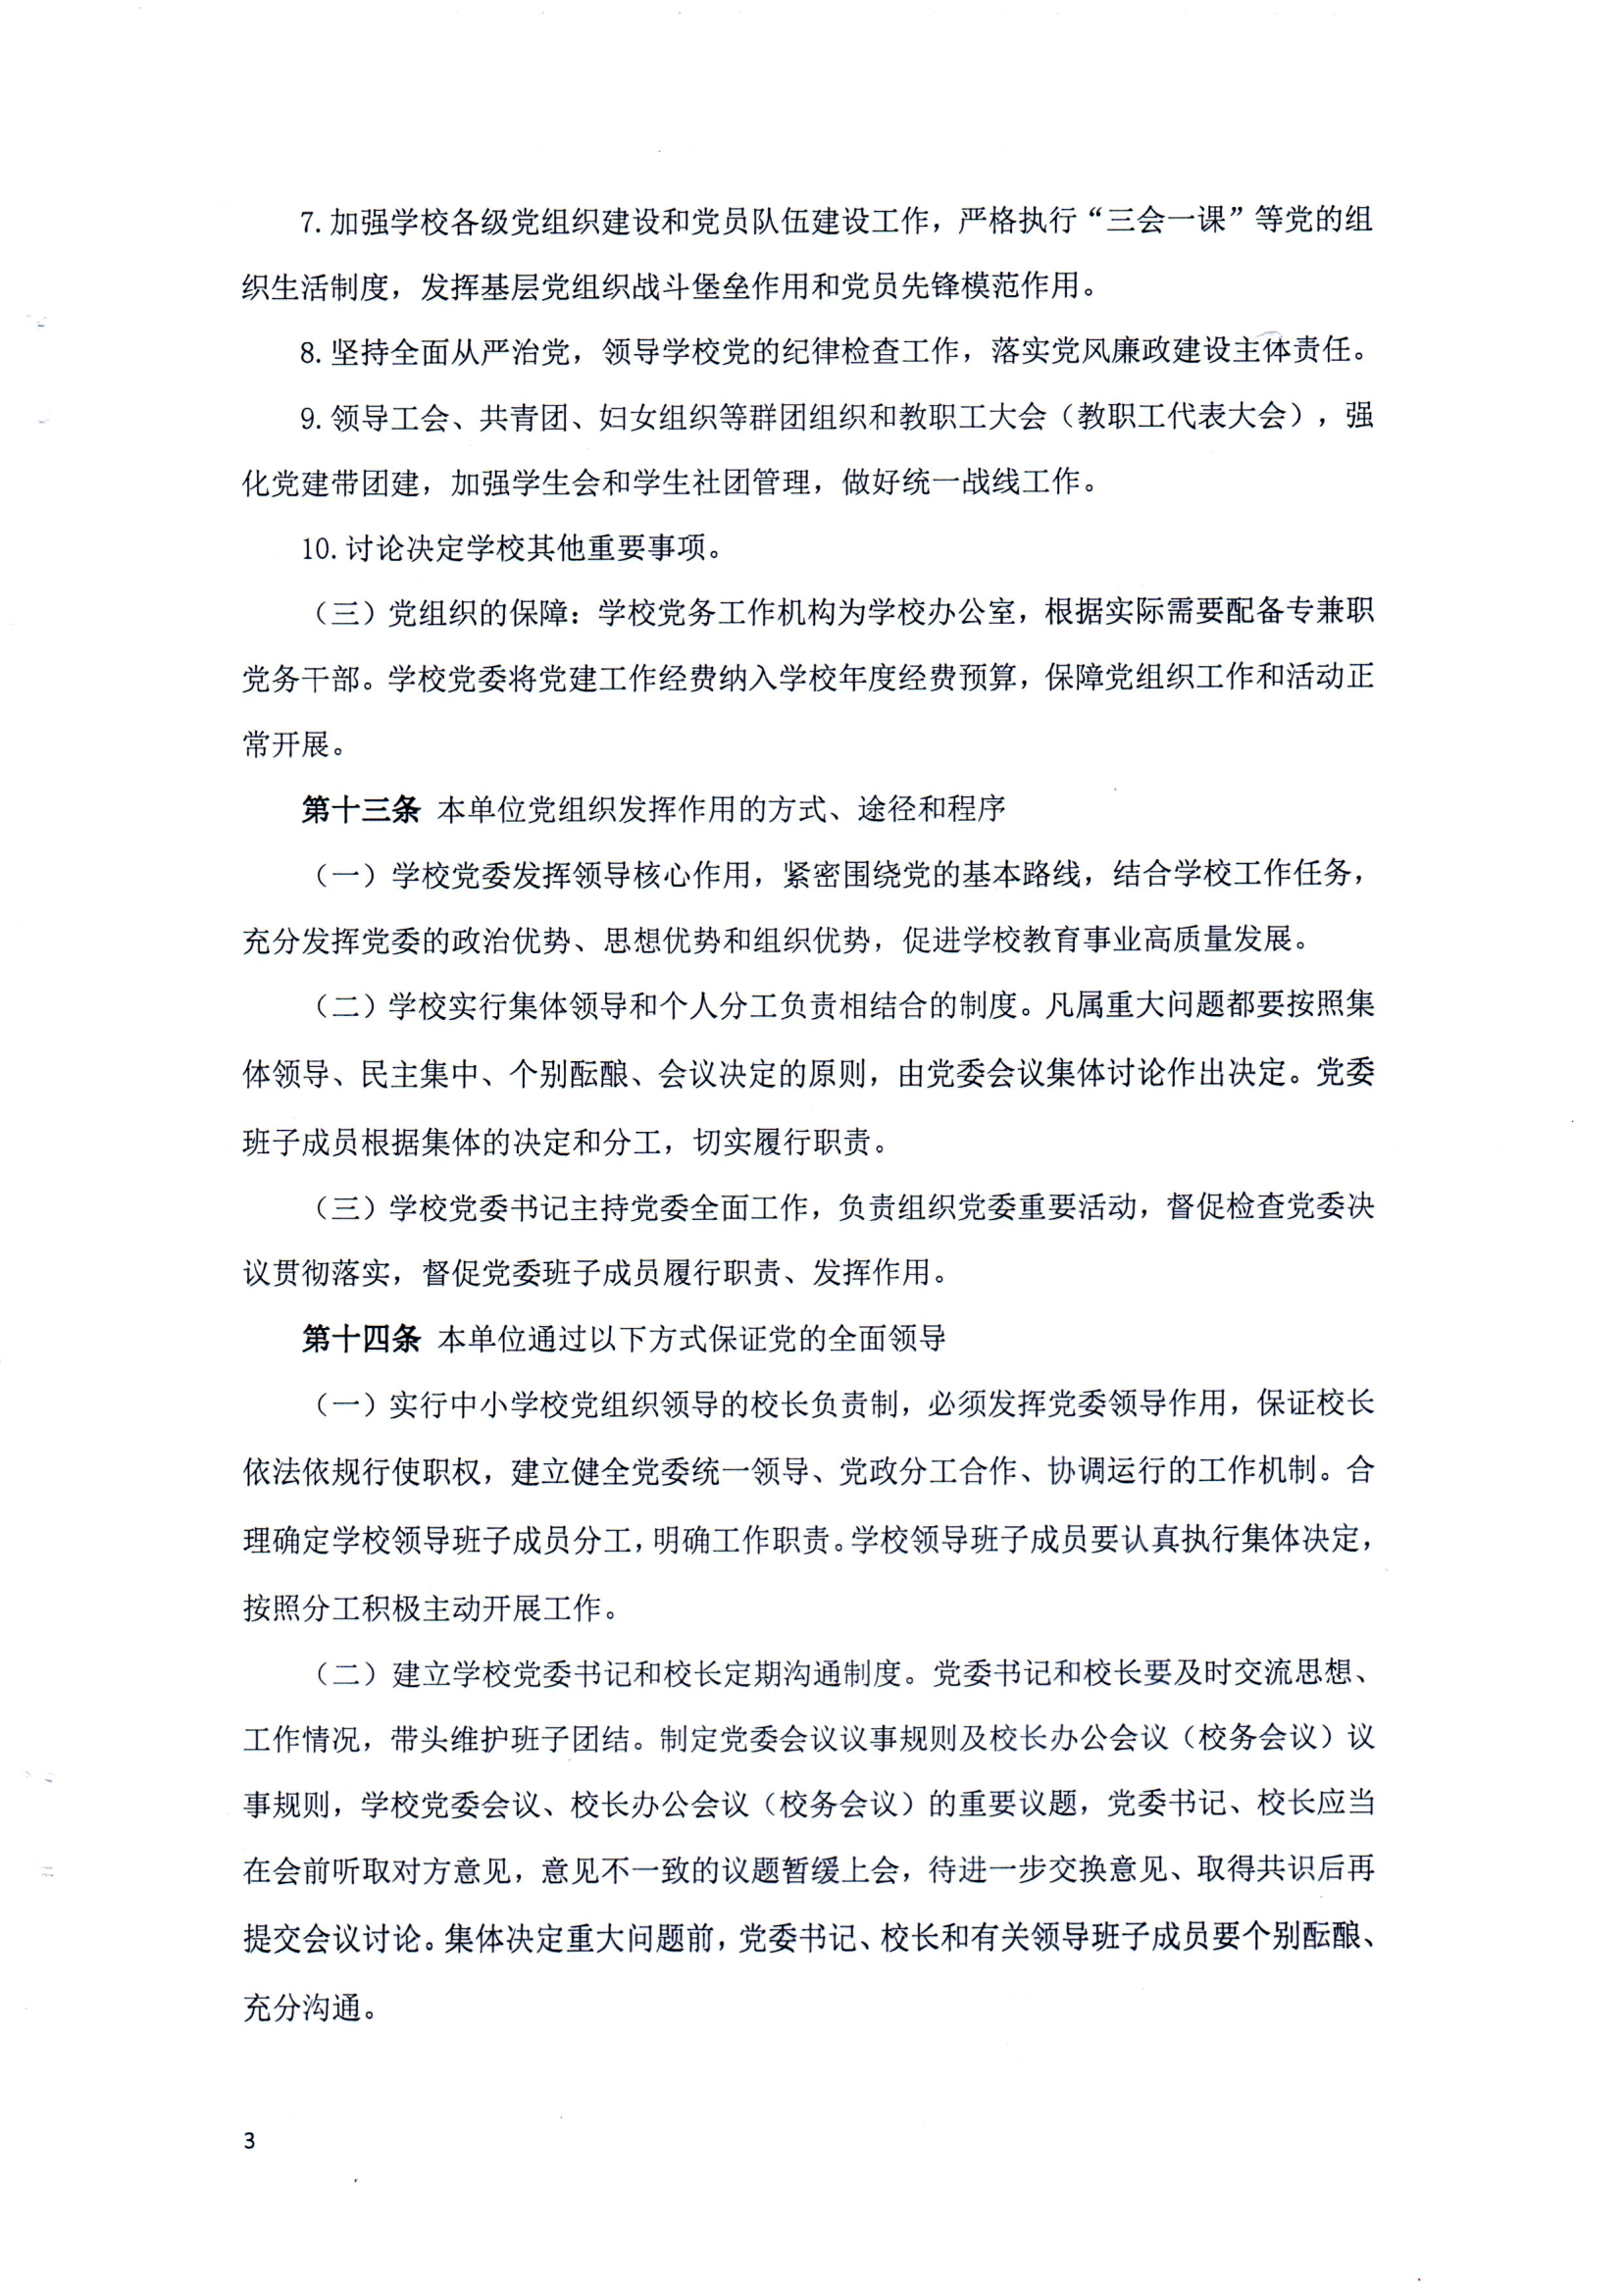 （中国）有限公司官网章程（修正案）_02.png